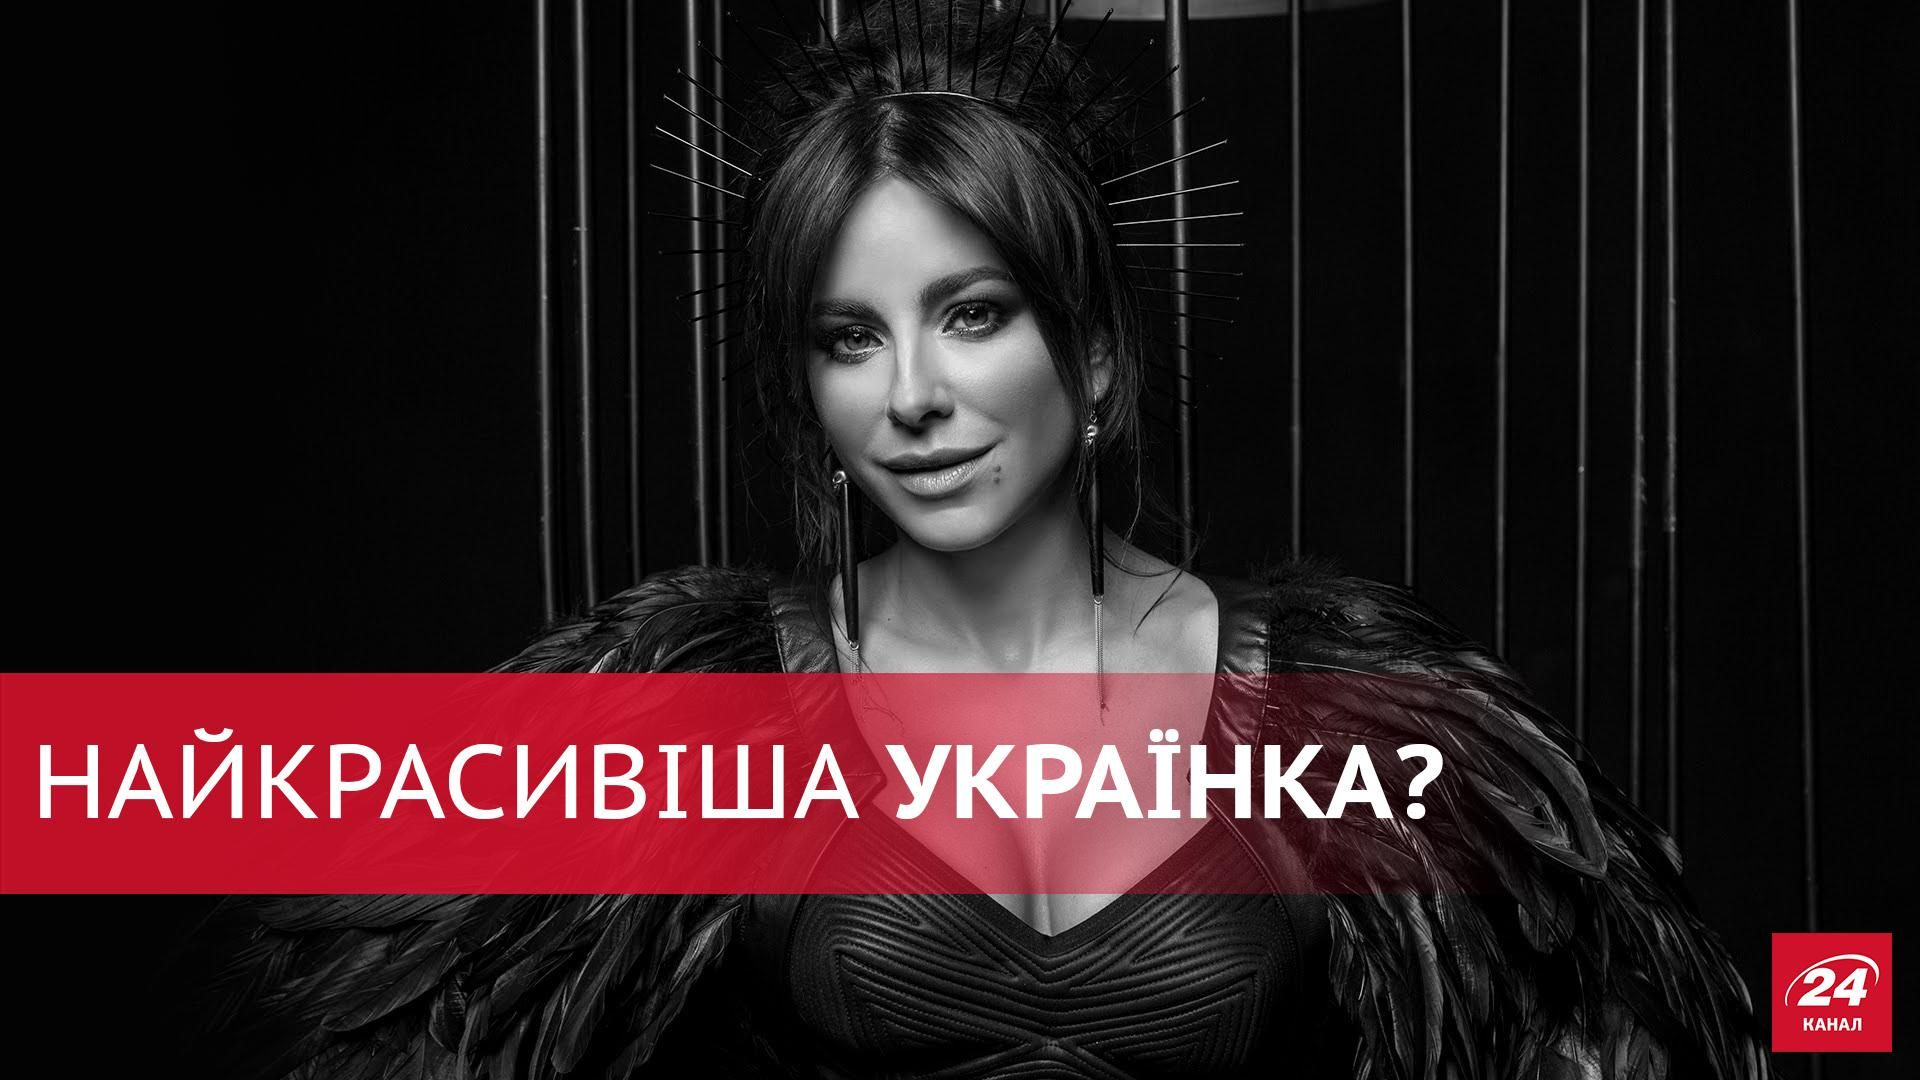 Лорак можуть визнати найкрасивішою українкою: в мережі хвиля обурення